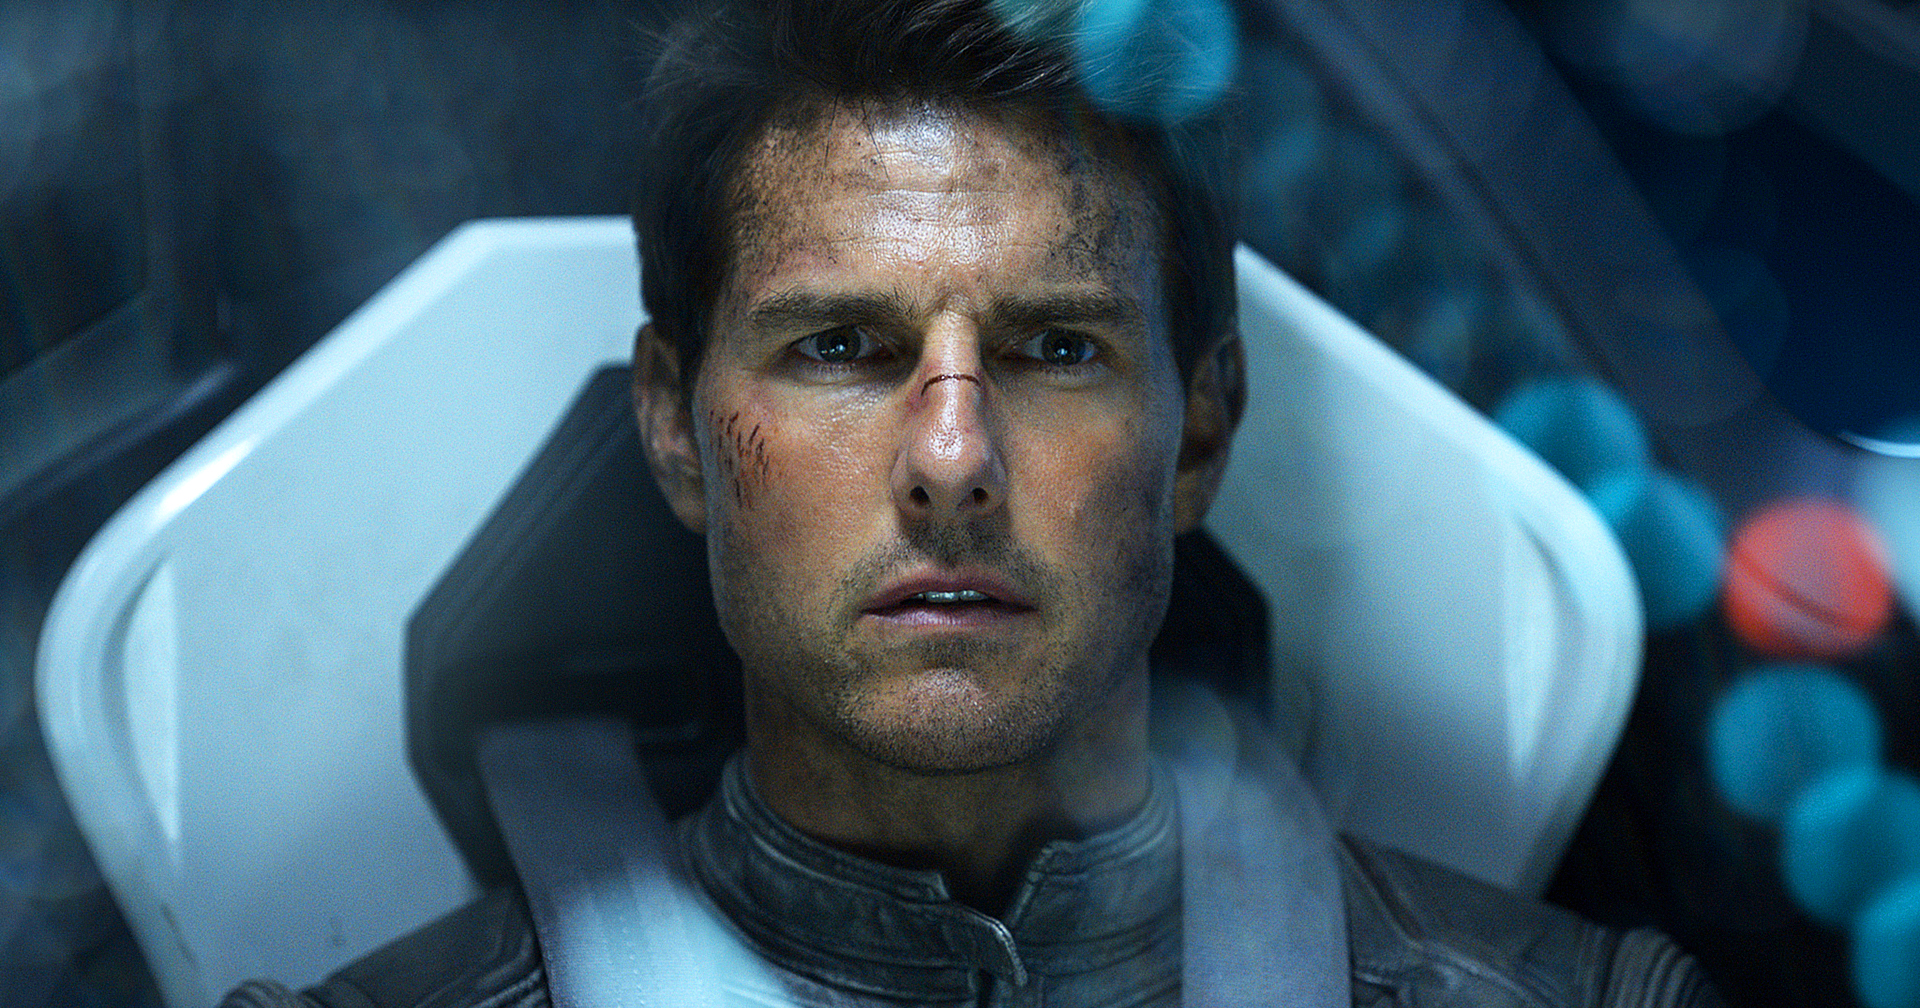 ผู้บริหาร Universal อัปเดตความคืบหน้าโปรเจกต์หนังที่จะถ่ายทำในอวกาศ : หวังให้ Tom Cruise เป็นพลเรือนคนแรกที่ได้เดินในอวกาศจริง ๆ